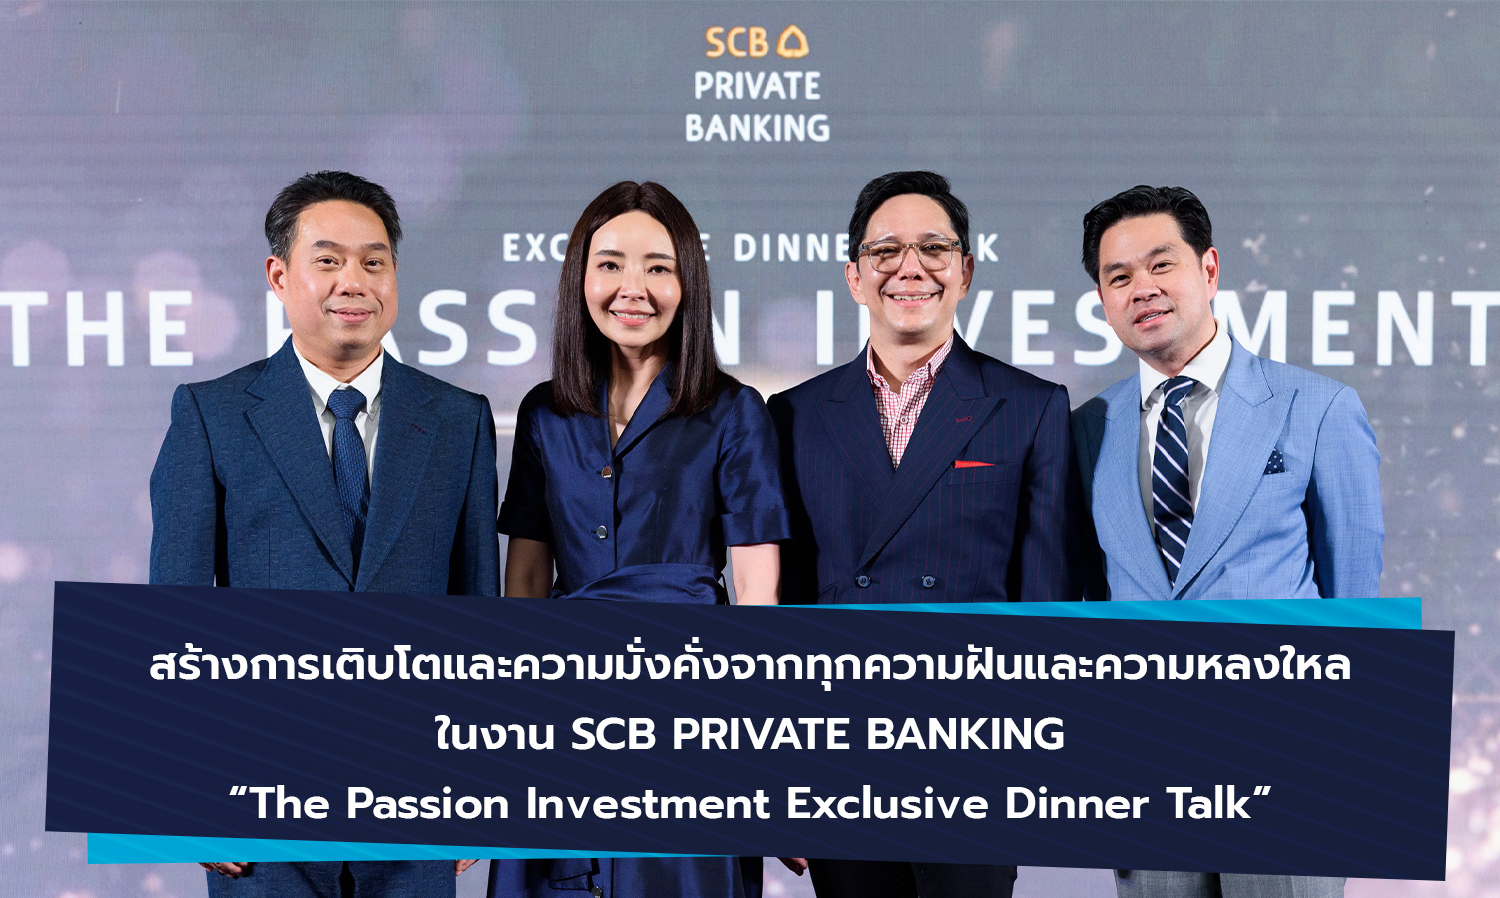 สร้างการเติบโตและความมั่งคั่งจากทุกความฝันและความหลงใหล ในงาน SCB PRIVATE BANKING The Passion Investment Exclusive Dinner Talk